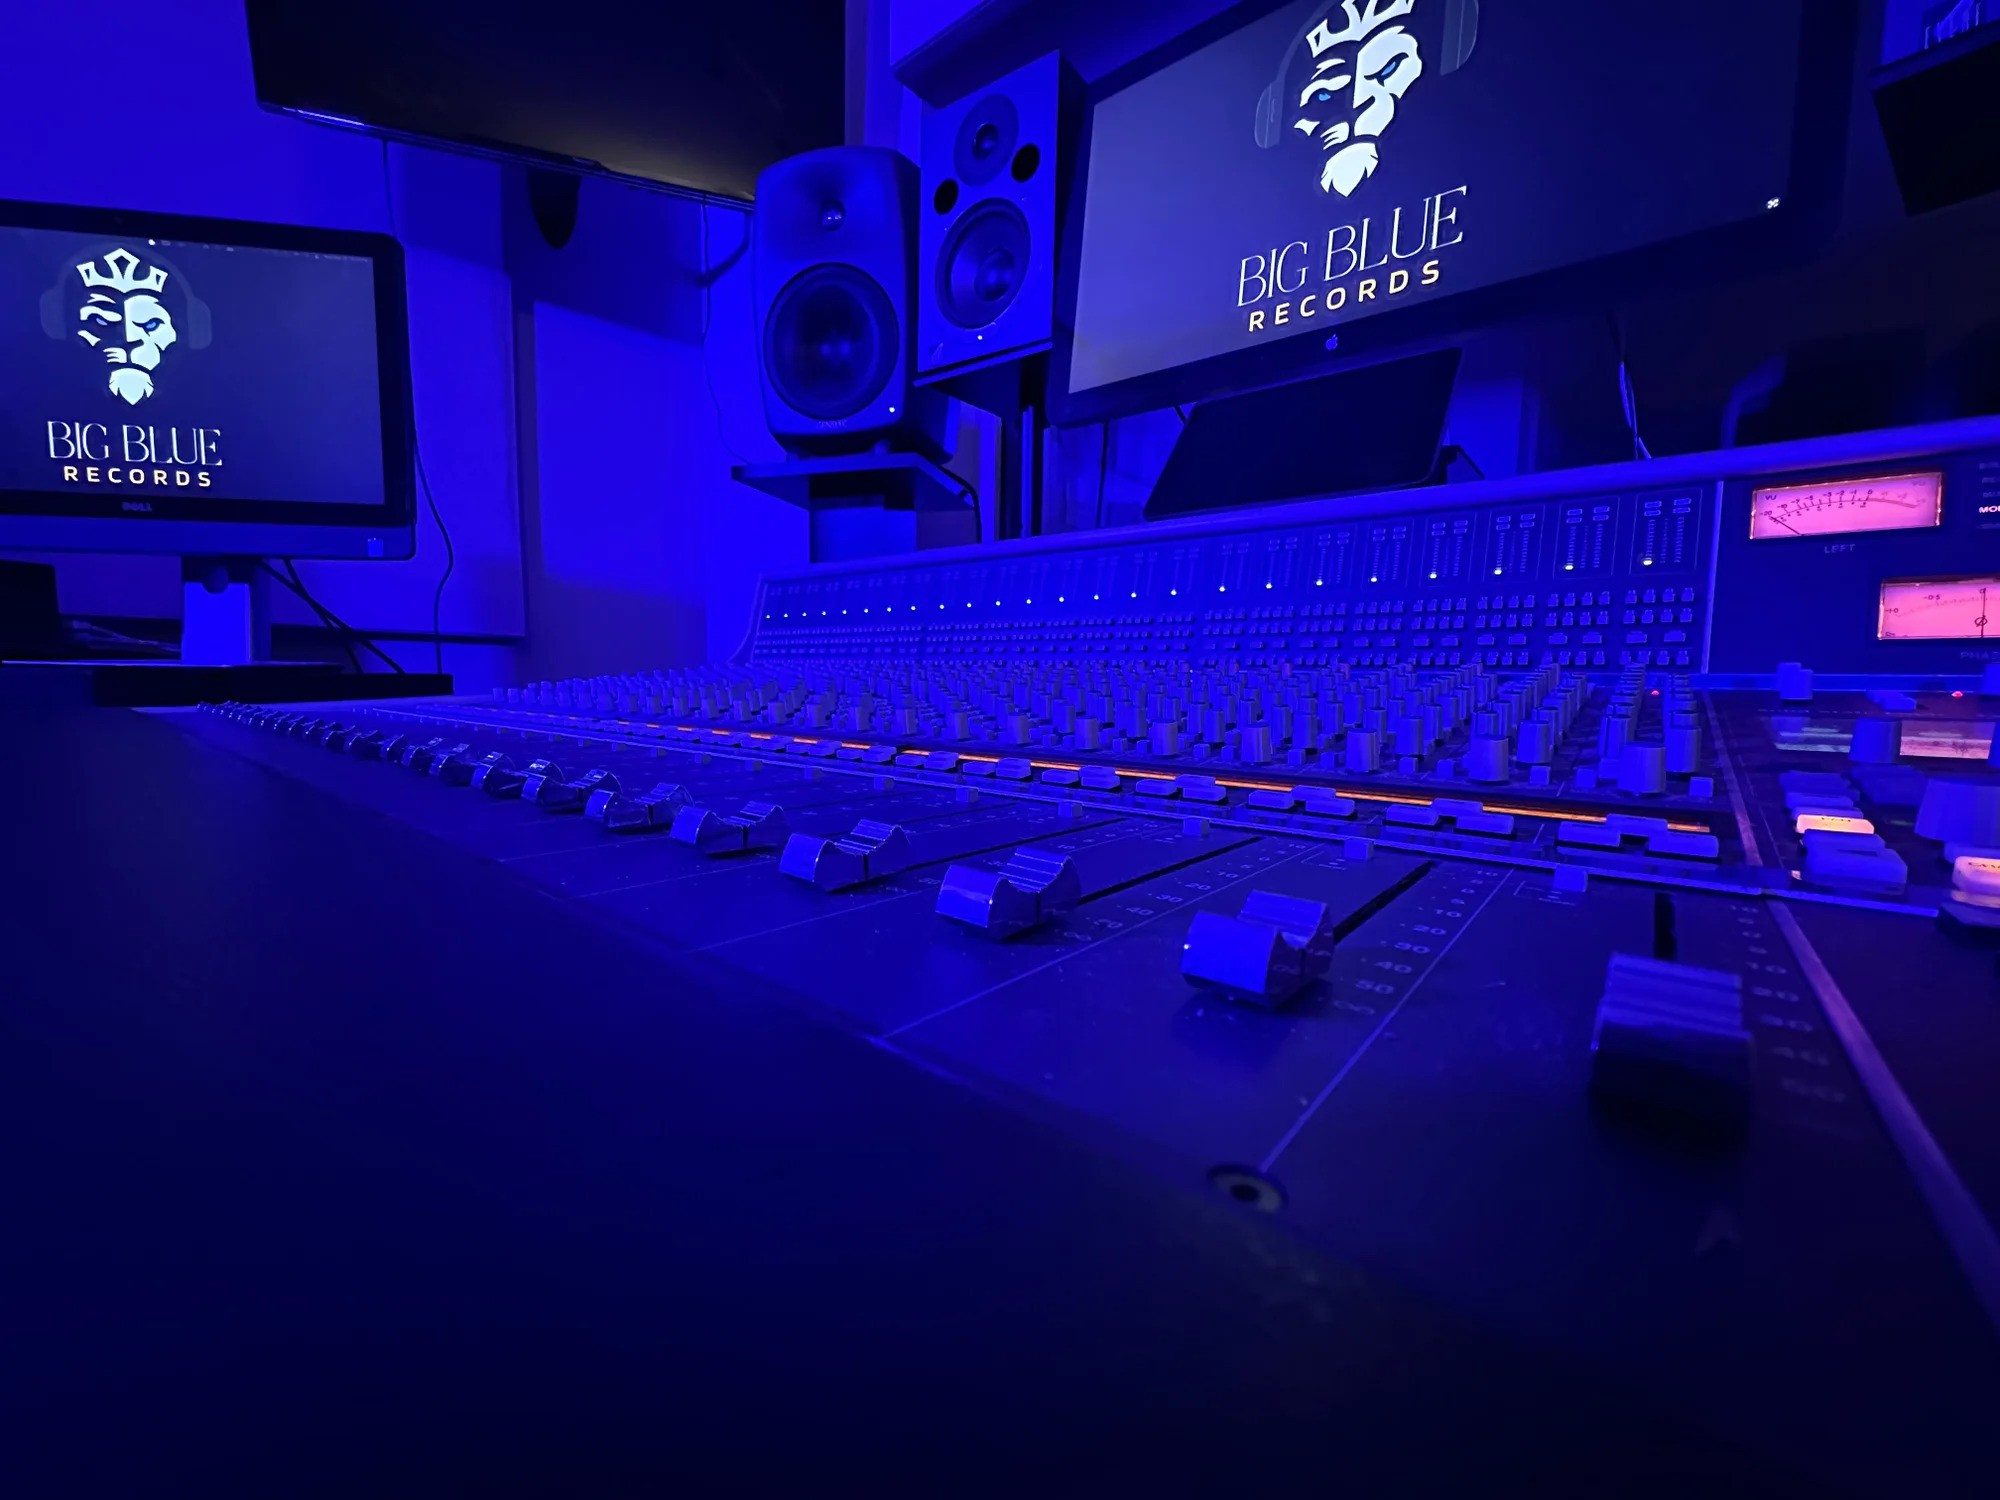 Sound mixer in the Big Blue Records recording studio in the Diehn Center. Via “big-blue-records.square.site”